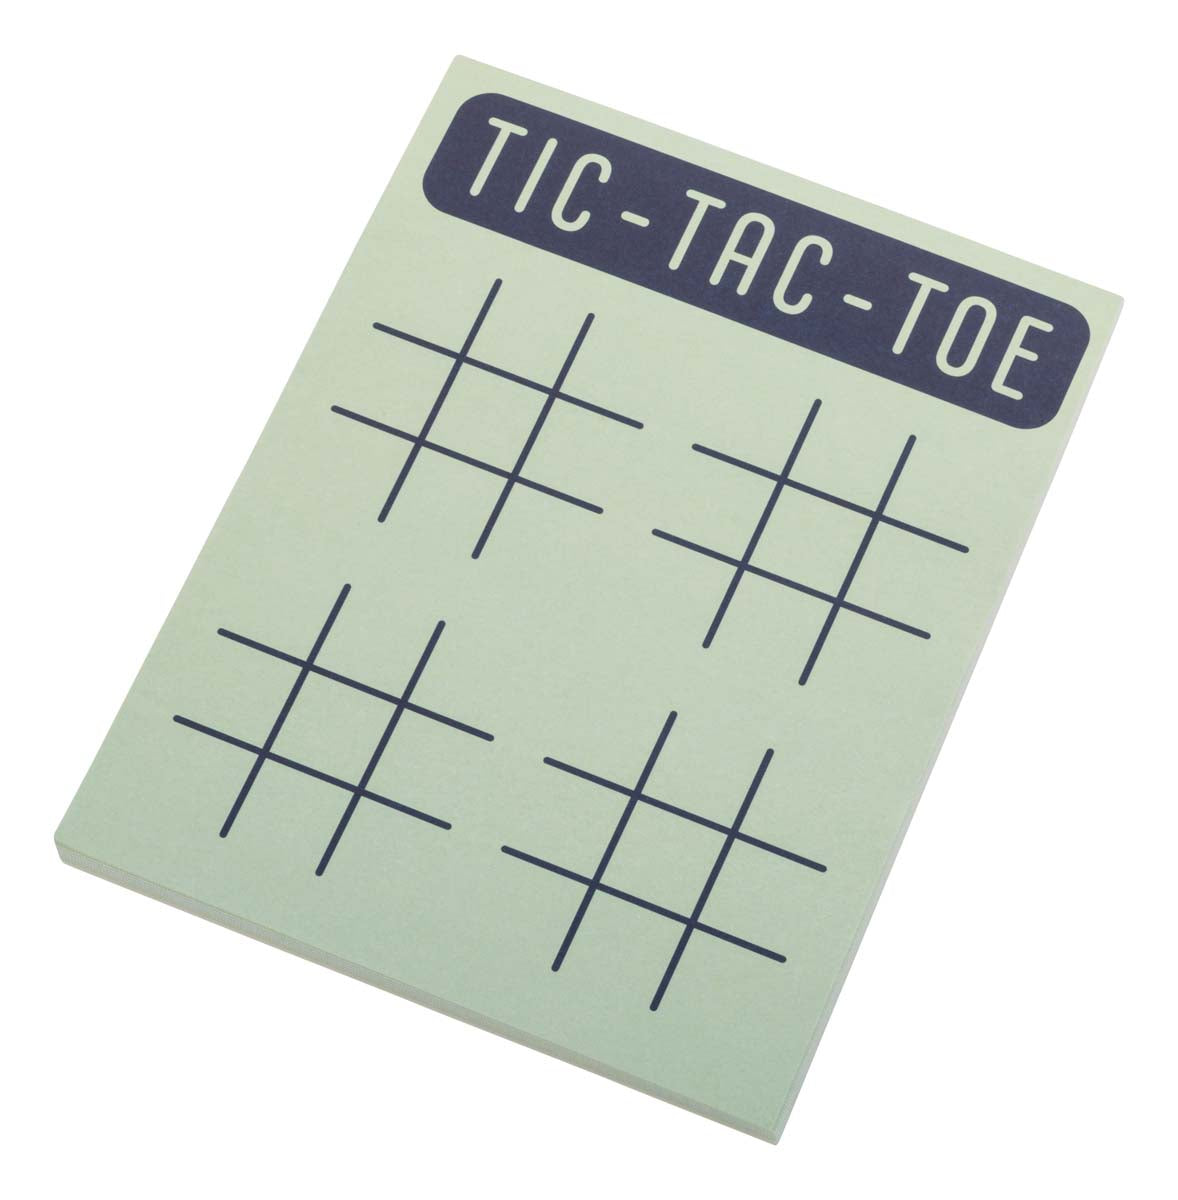 Tic- Tac - Toe notepad